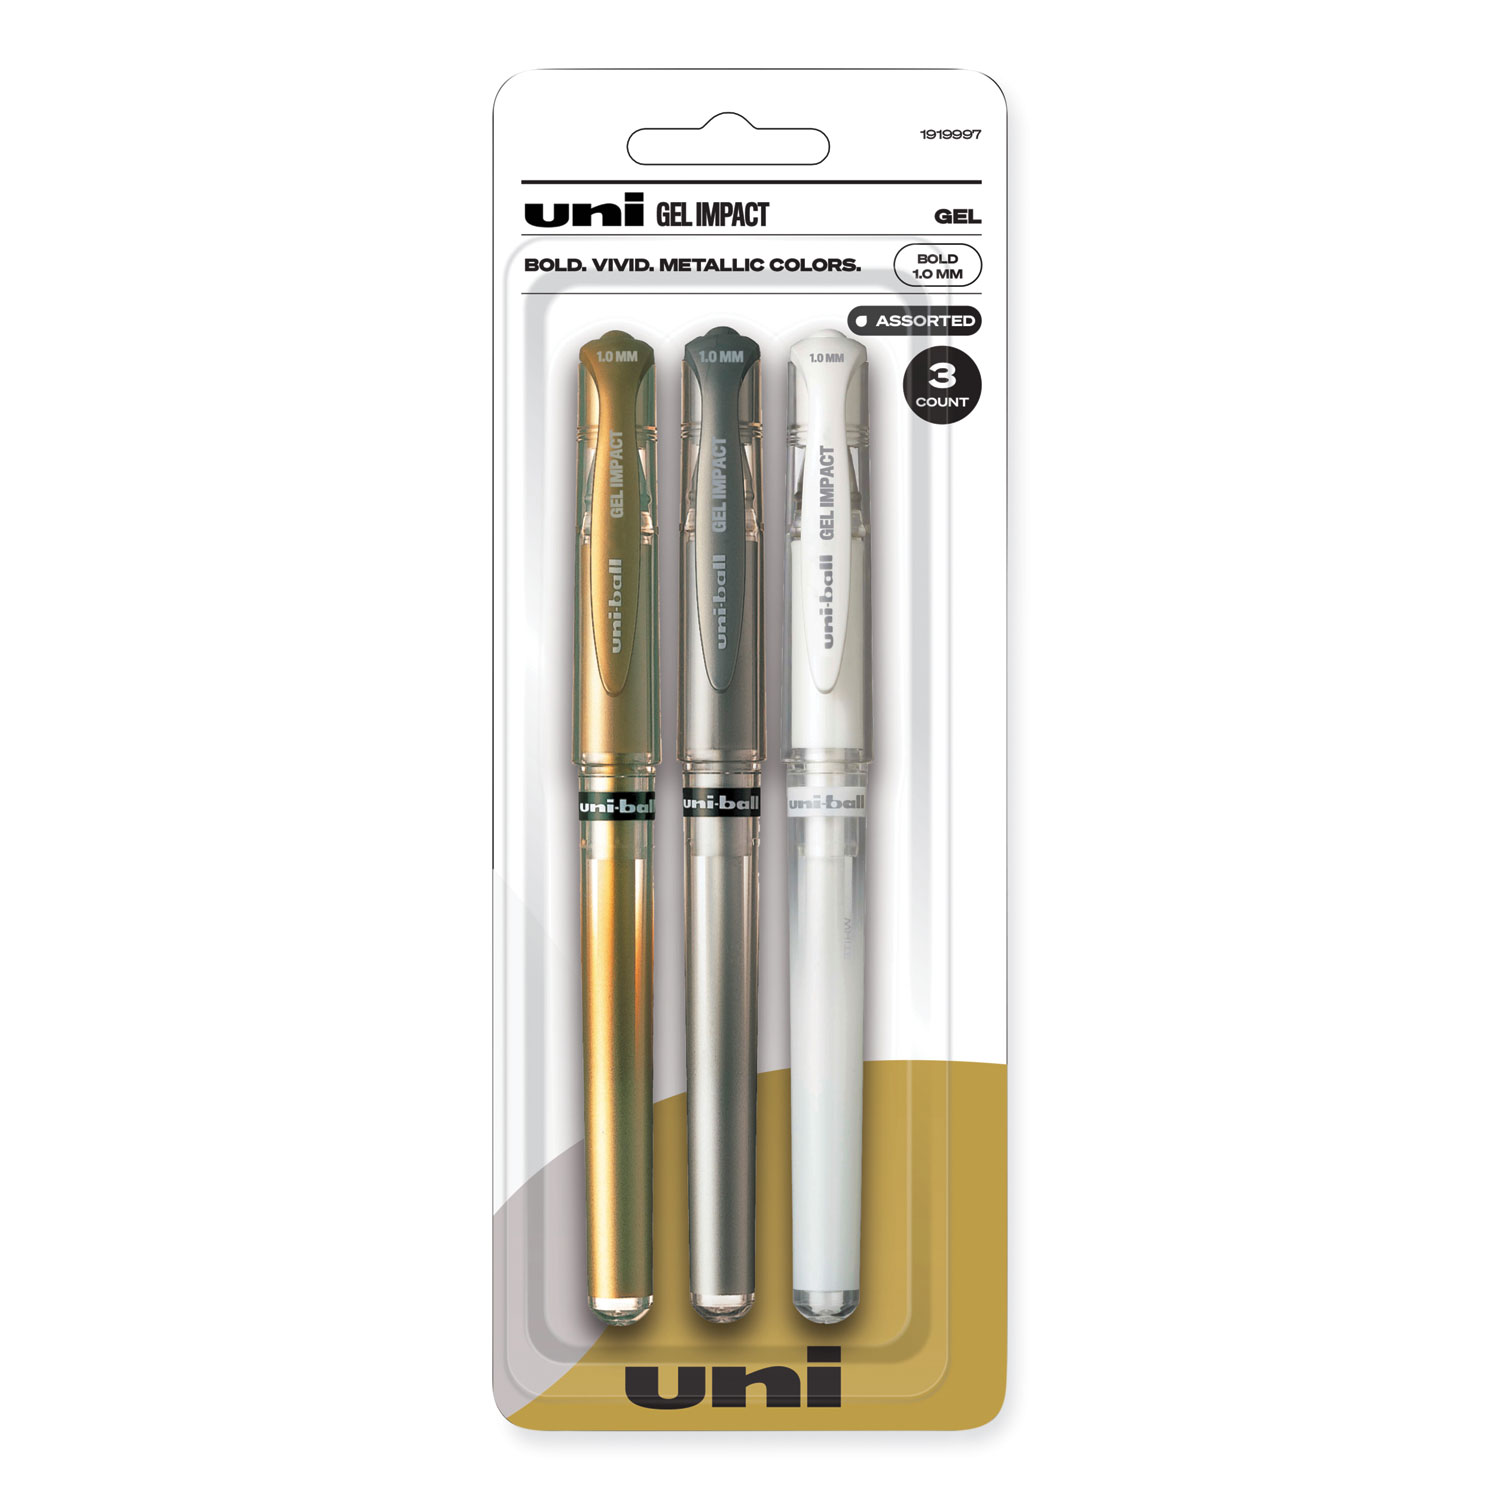 Emott Porous Point Pen, Stick, Fine 0.4 Mm, Assorted Ink Colors